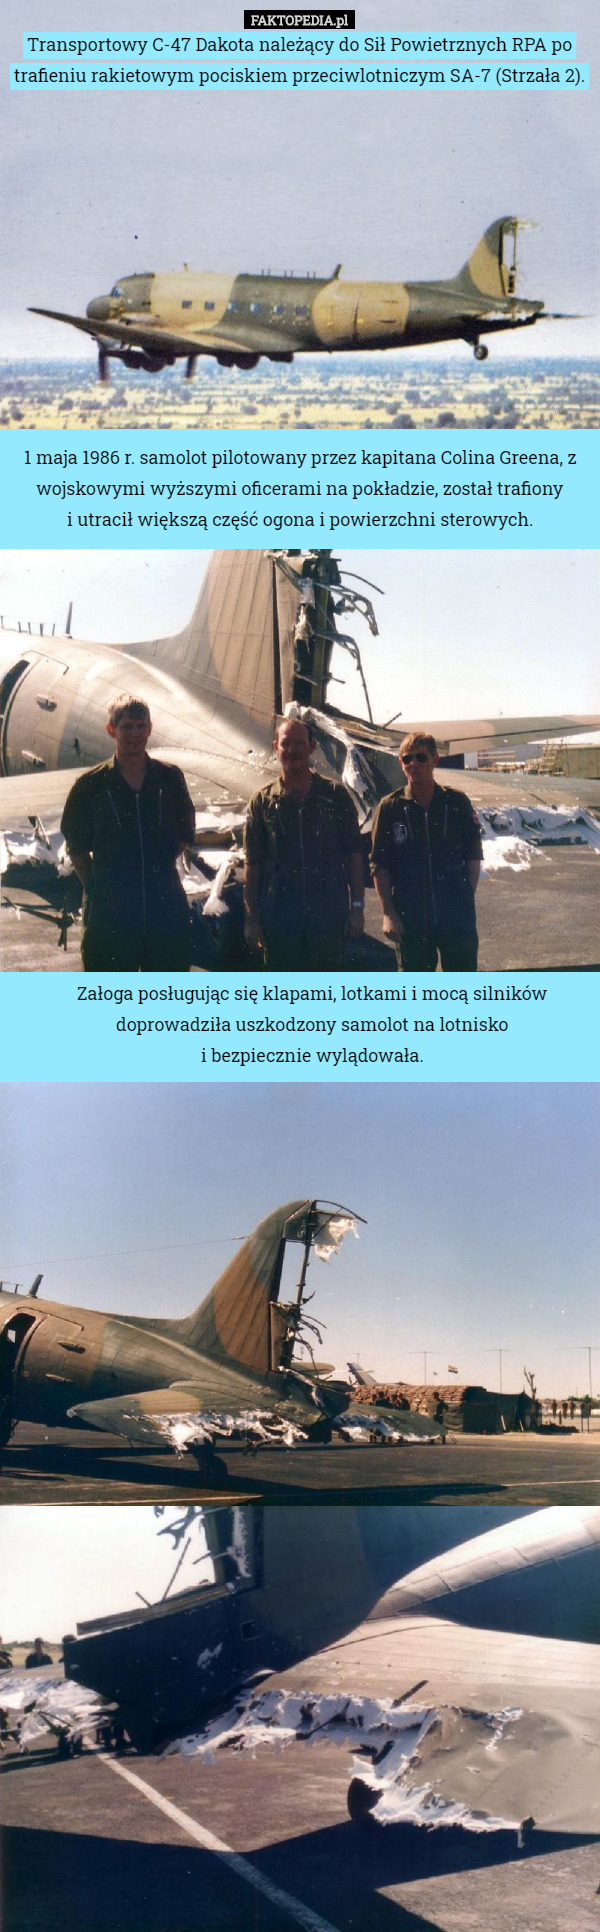 Transportowy C-47 Dakota należący do Sił Powietrznych RPA po trafieniu rakietowym pociskiem przeciwlotniczym SA-7 (Strzała 2). 1 maja 1986 r. samolot pilotowany przez kapitana Colina Greena, z wojskowymi wyższymi oficerami na pokładzie, został trafiony
 i utracił większą część ogona i powierzchni sterowych. Załoga posługując się klapami, lotkami i mocą silników doprowadziła uszkodzony samolot na lotnisko
 i bezpiecznie wylądowała. 